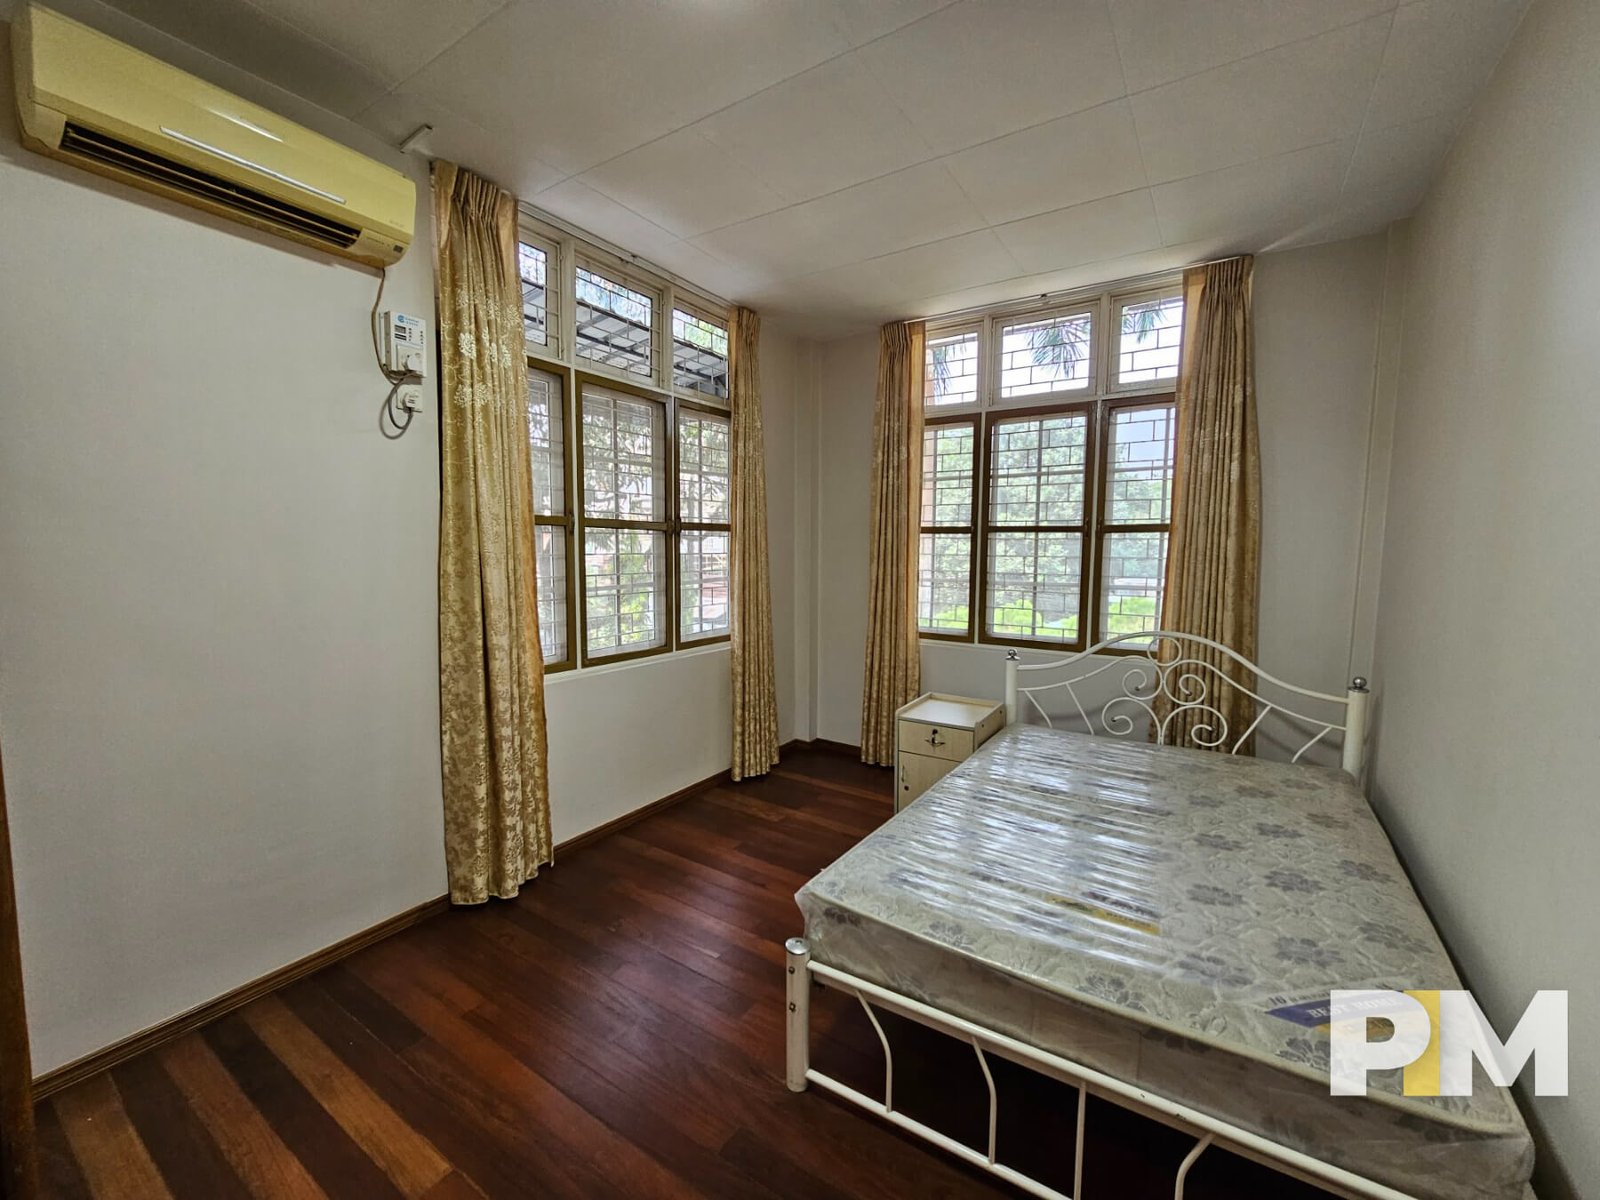 Bedroom - Myanmar Real Estate